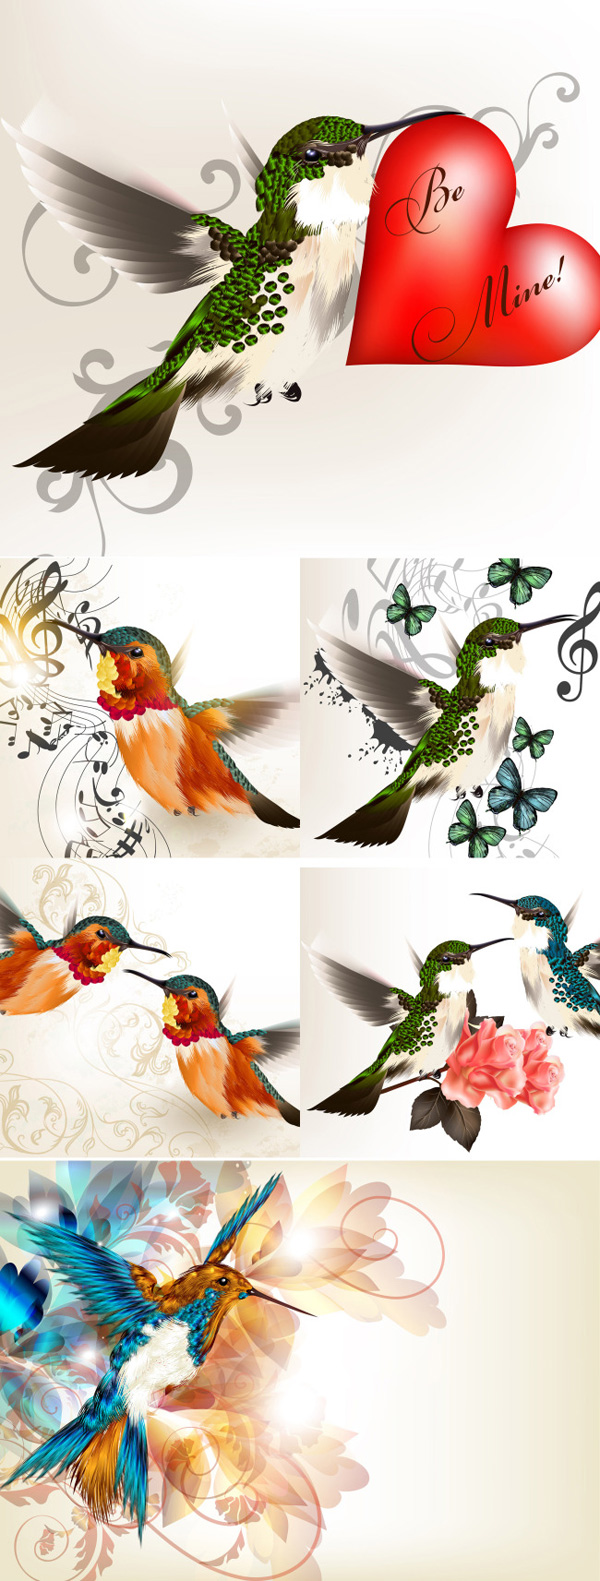 tangan dicat burung tema